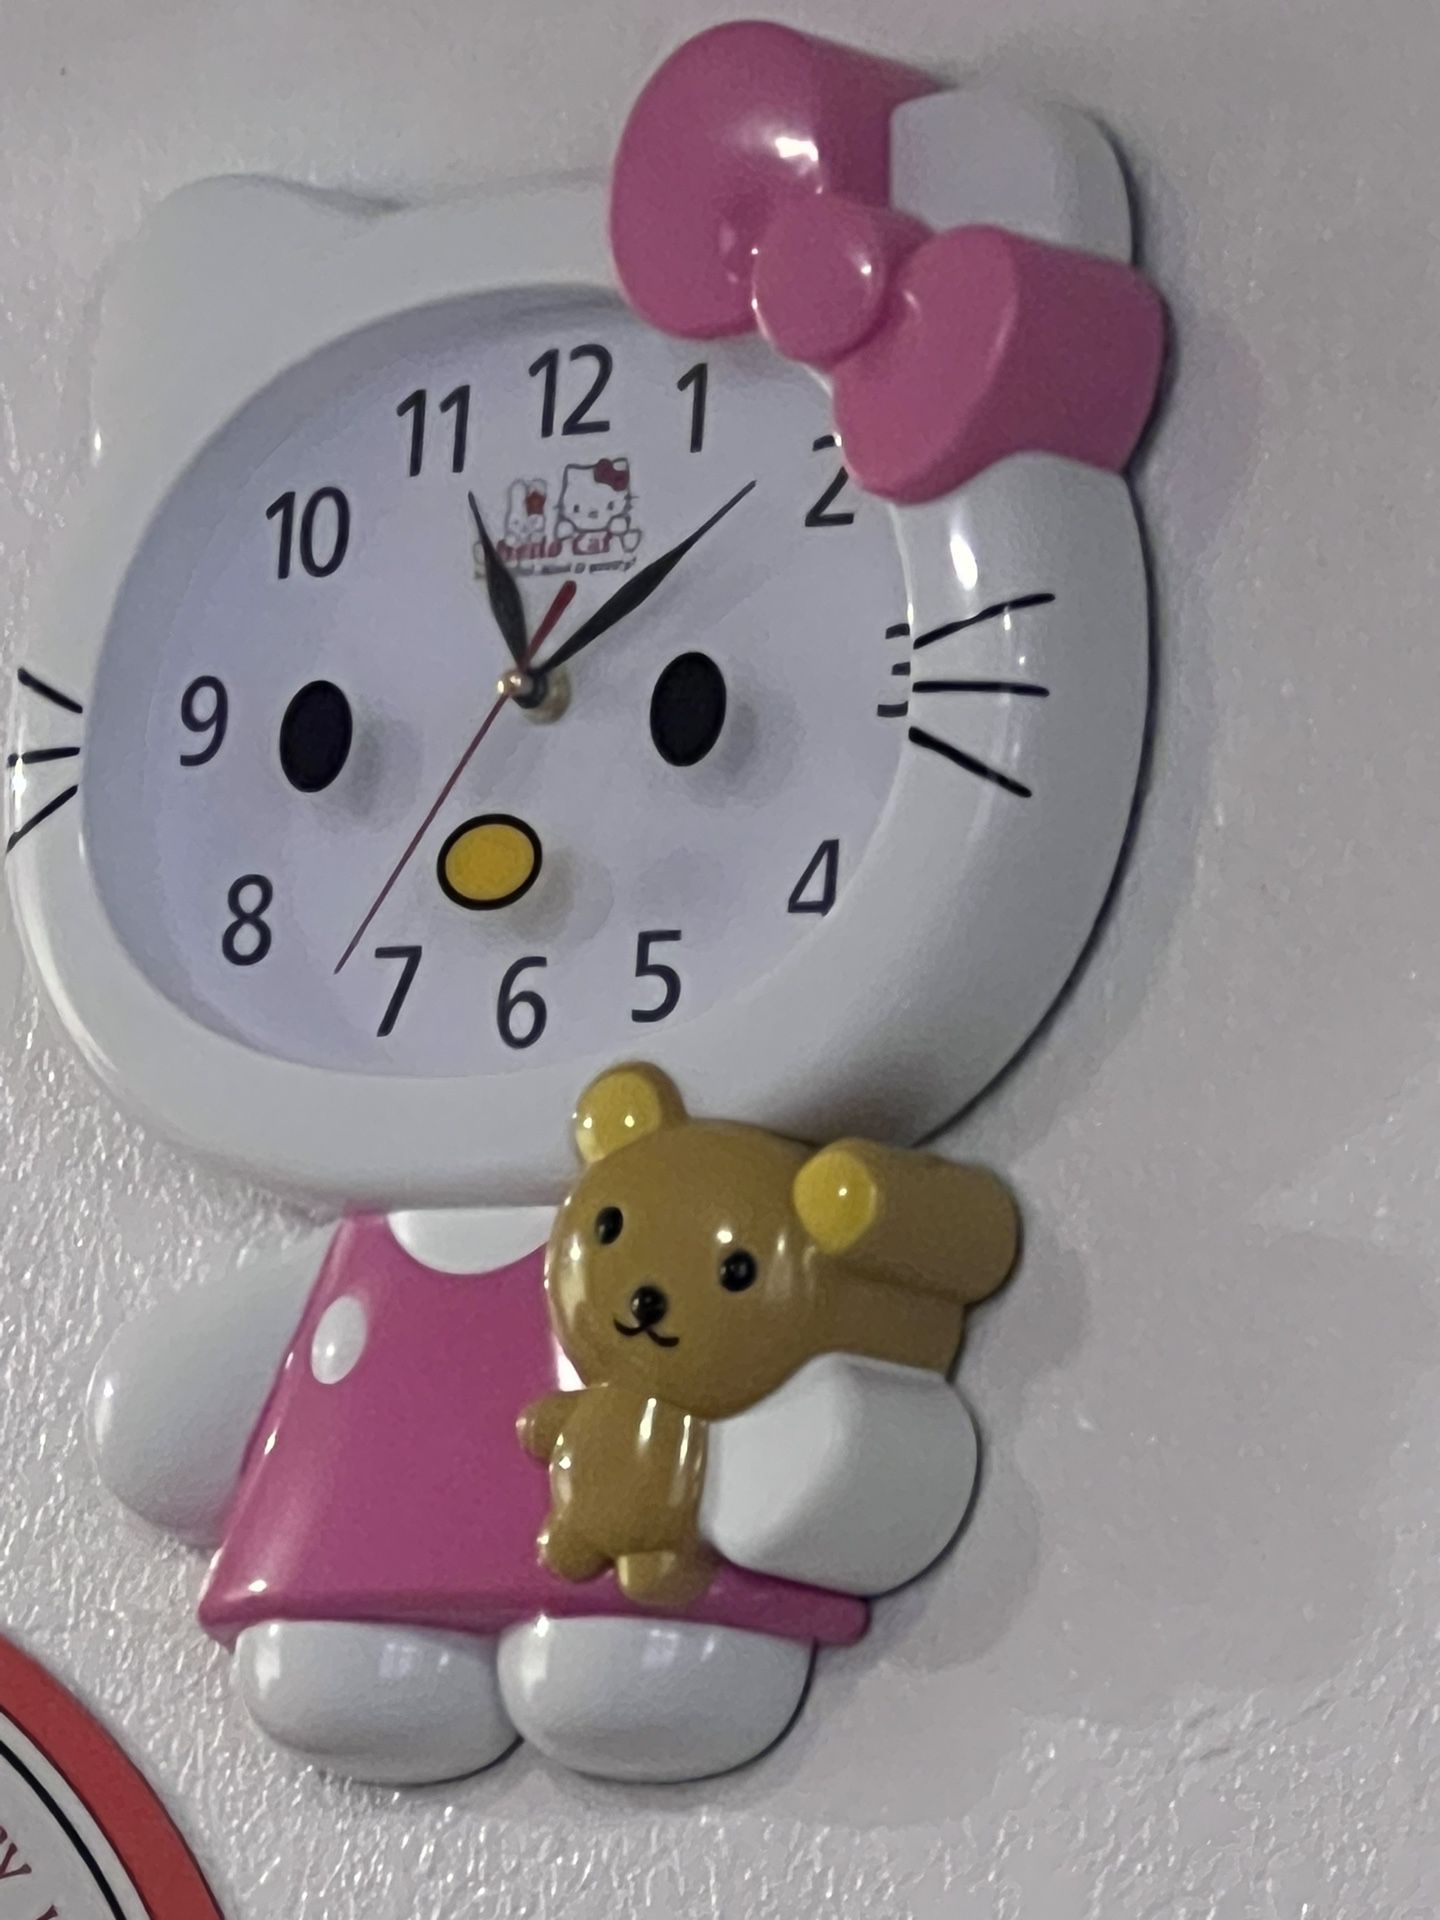 Hellokitty Clock Med Size $35